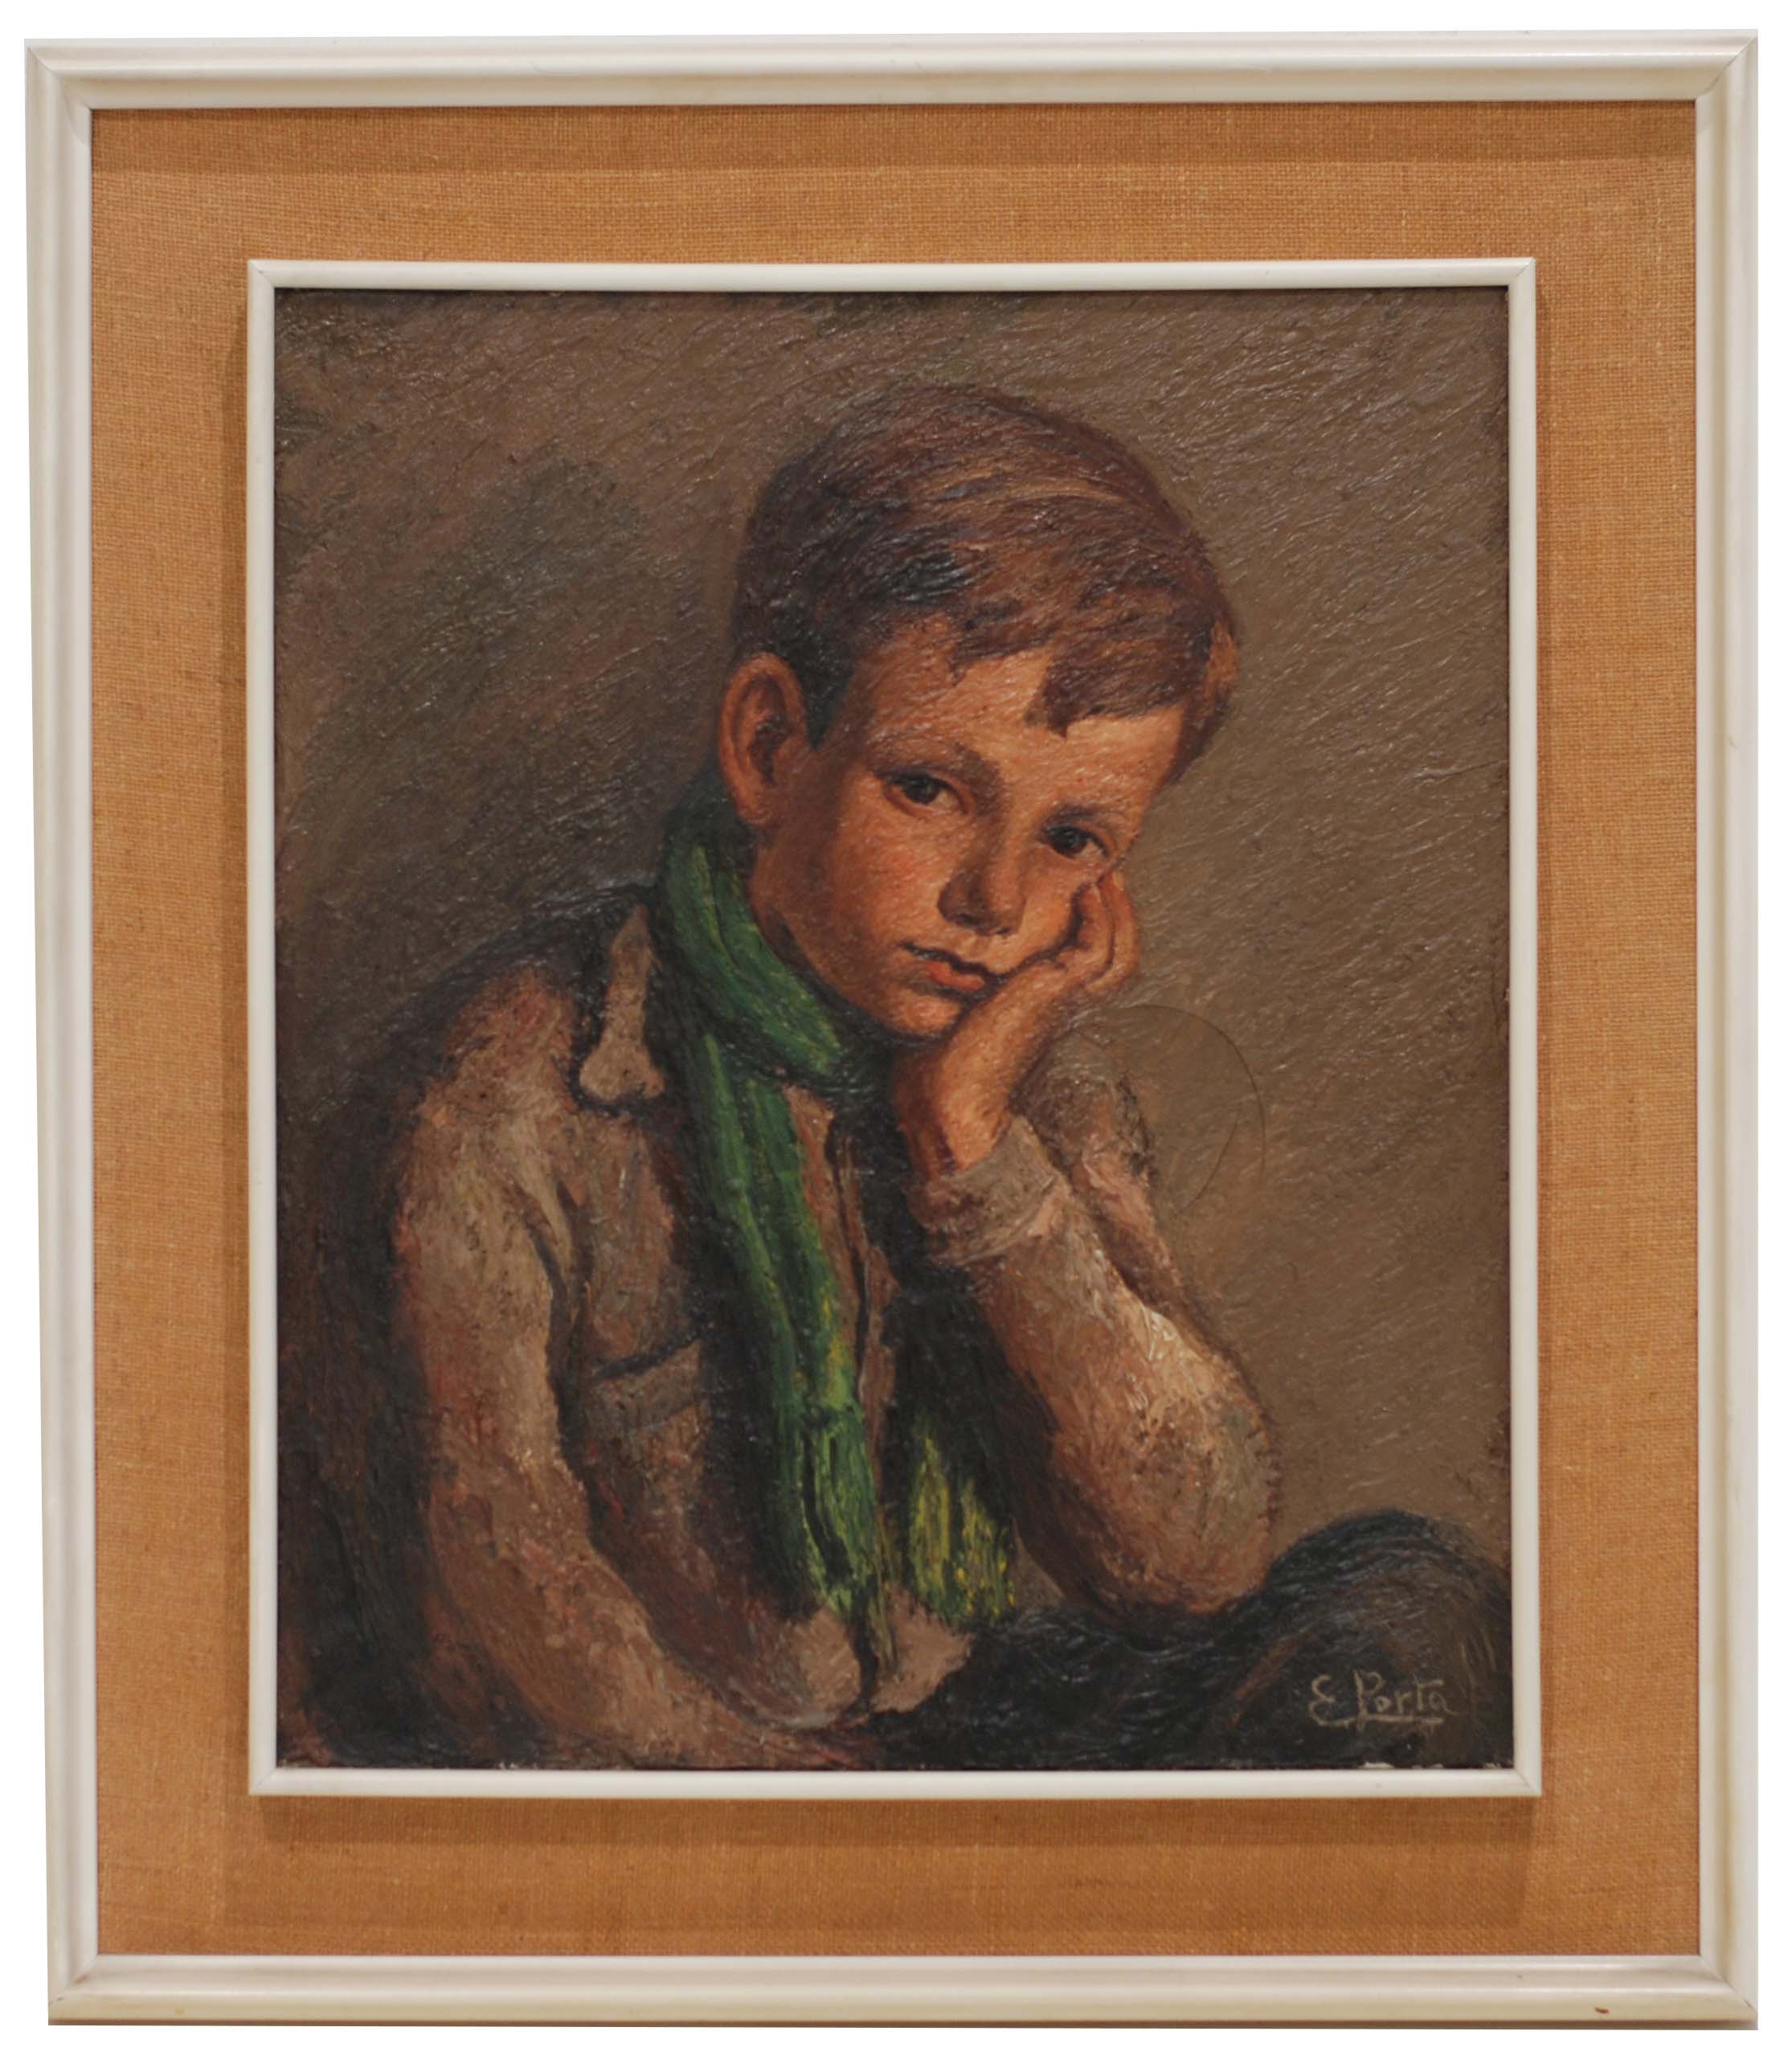 ENRIC PORTA (1901-1993). "Retrato niño".